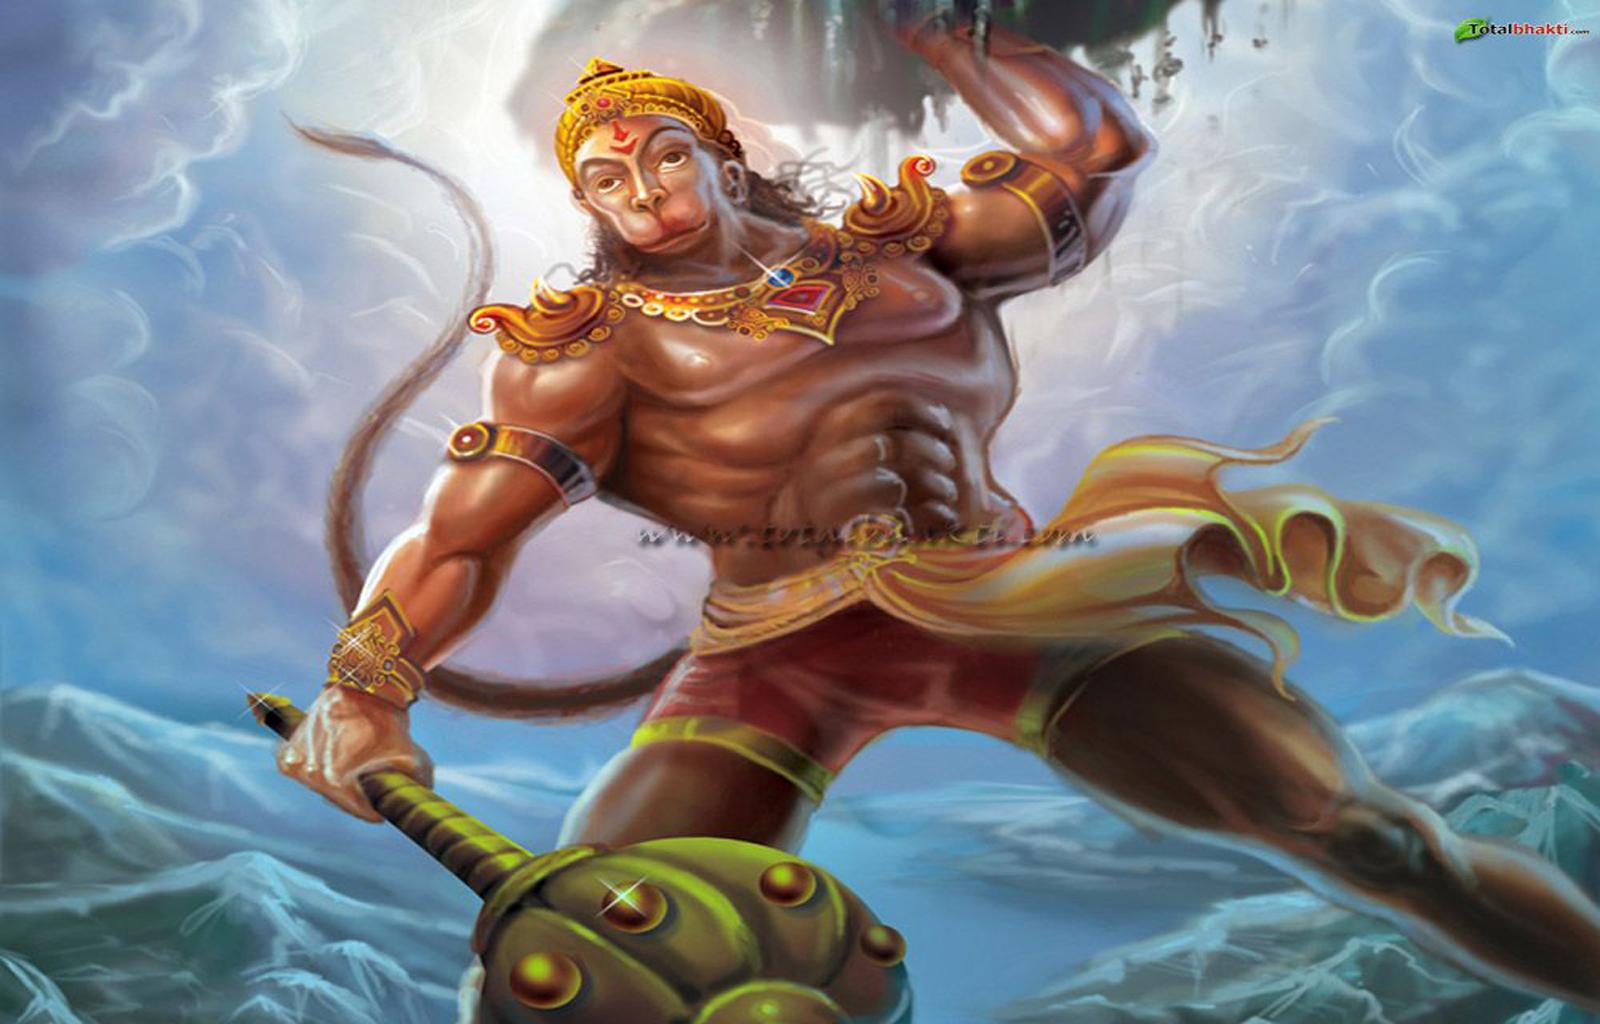 hanuman ji bodybuilder wallpaper  Hanuman images